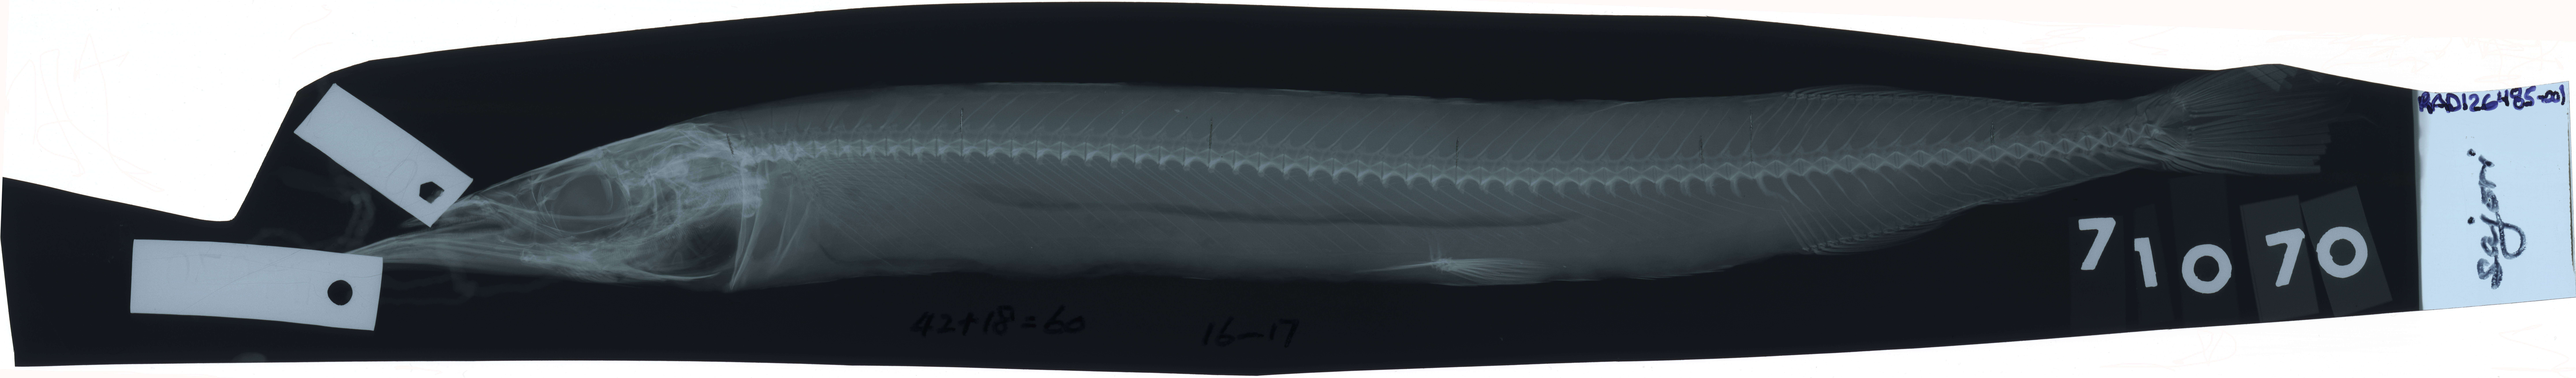 Image of Halfbeak fish